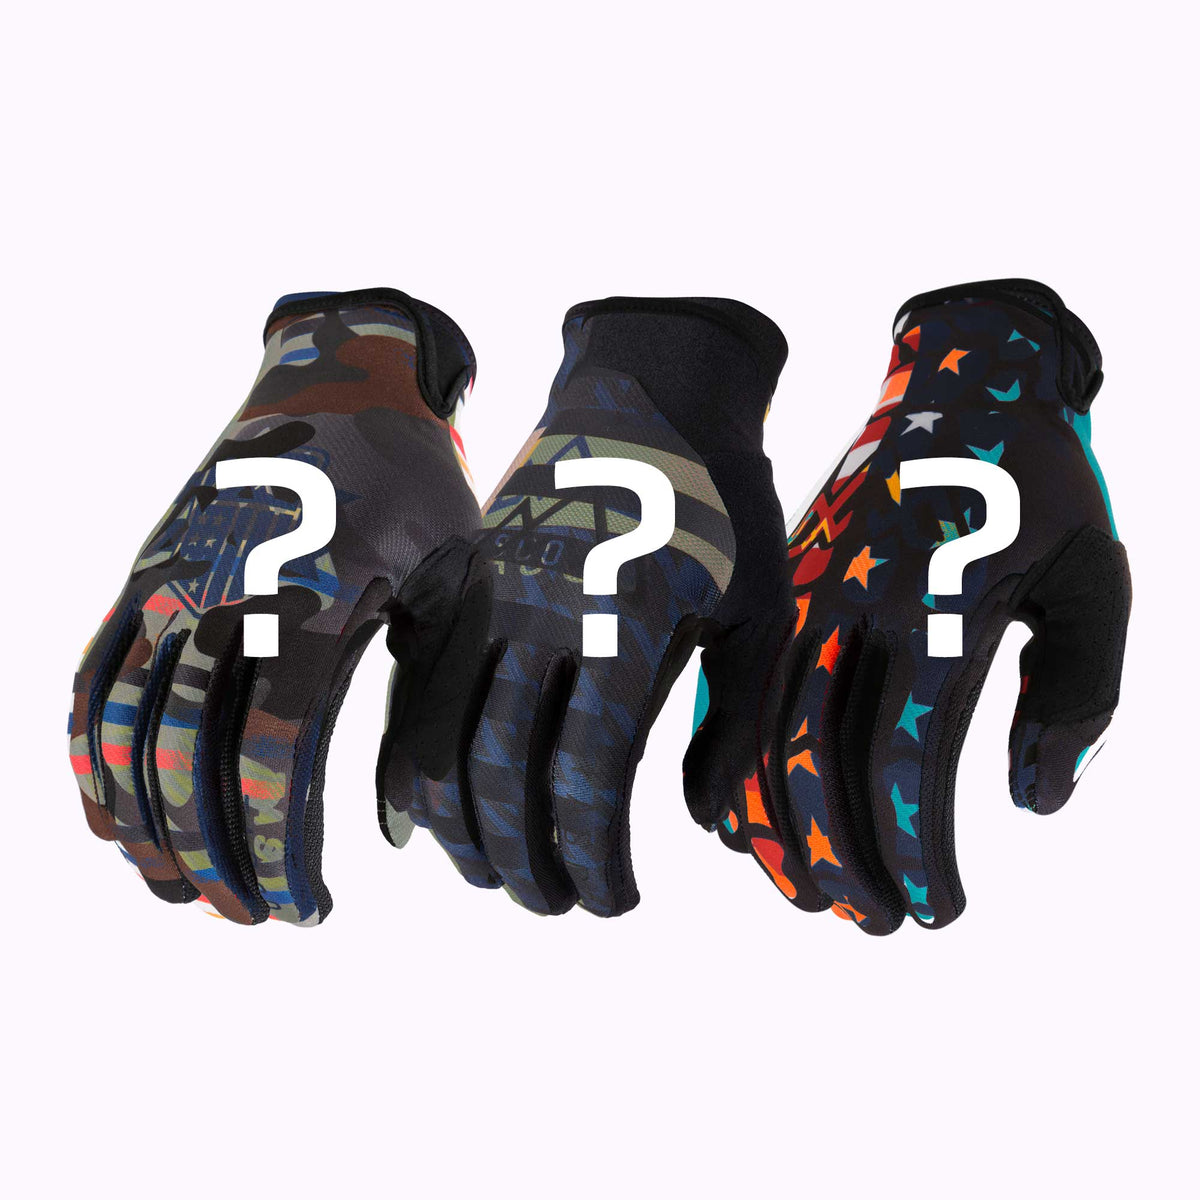 Mystery 3 Pack of TASCO MTB Gloves